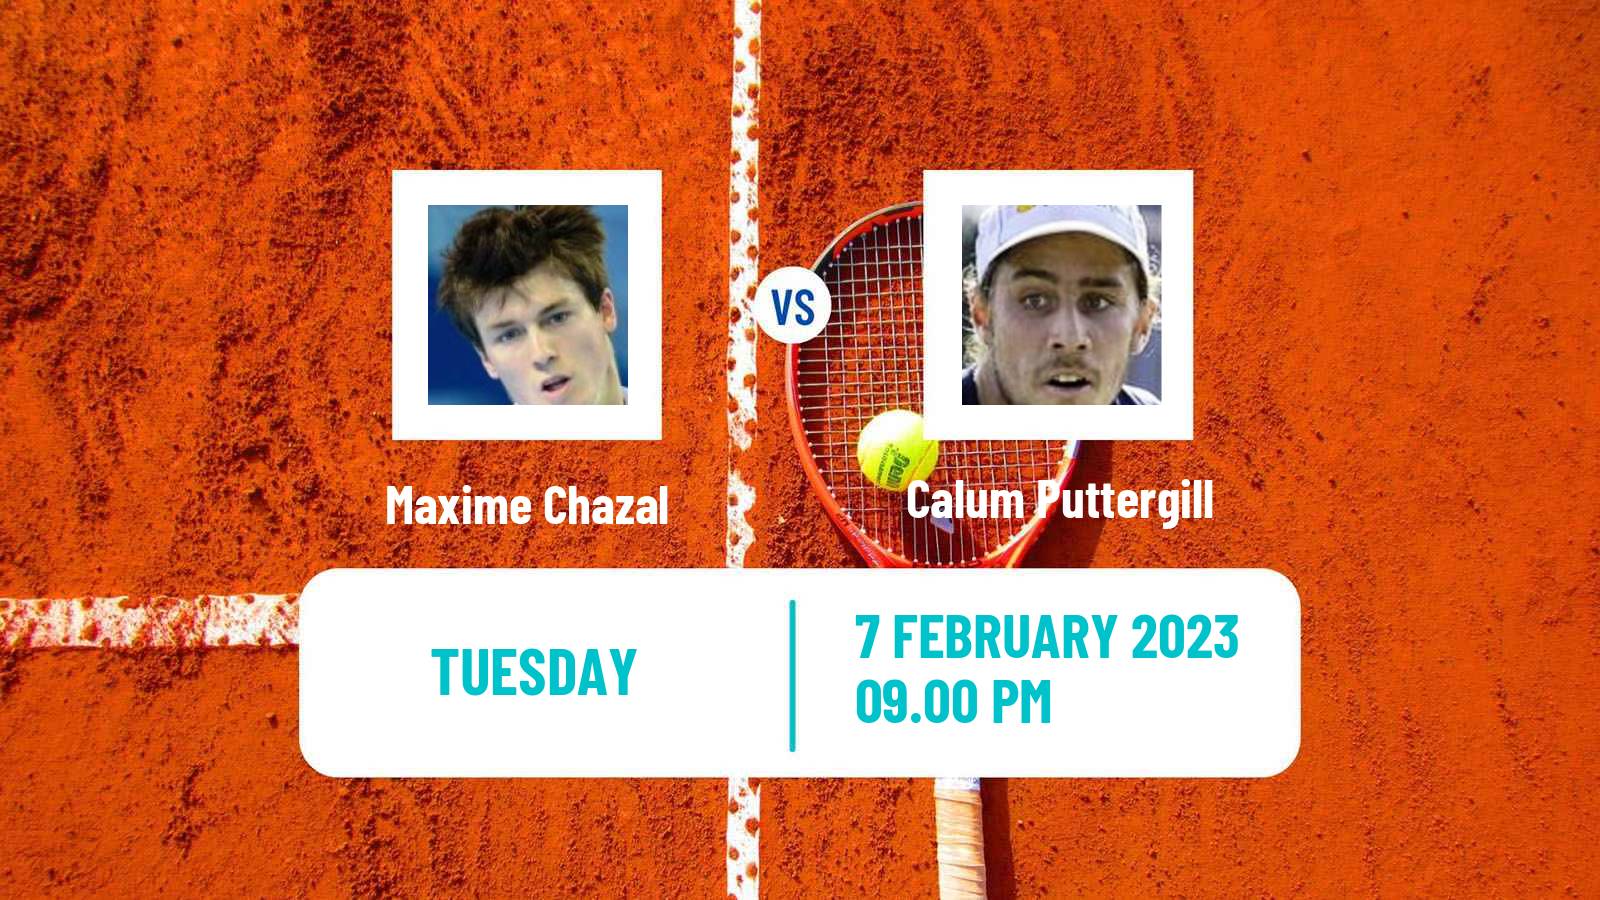 Tennis ITF Tournaments Maxime Chazal - Calum Puttergill